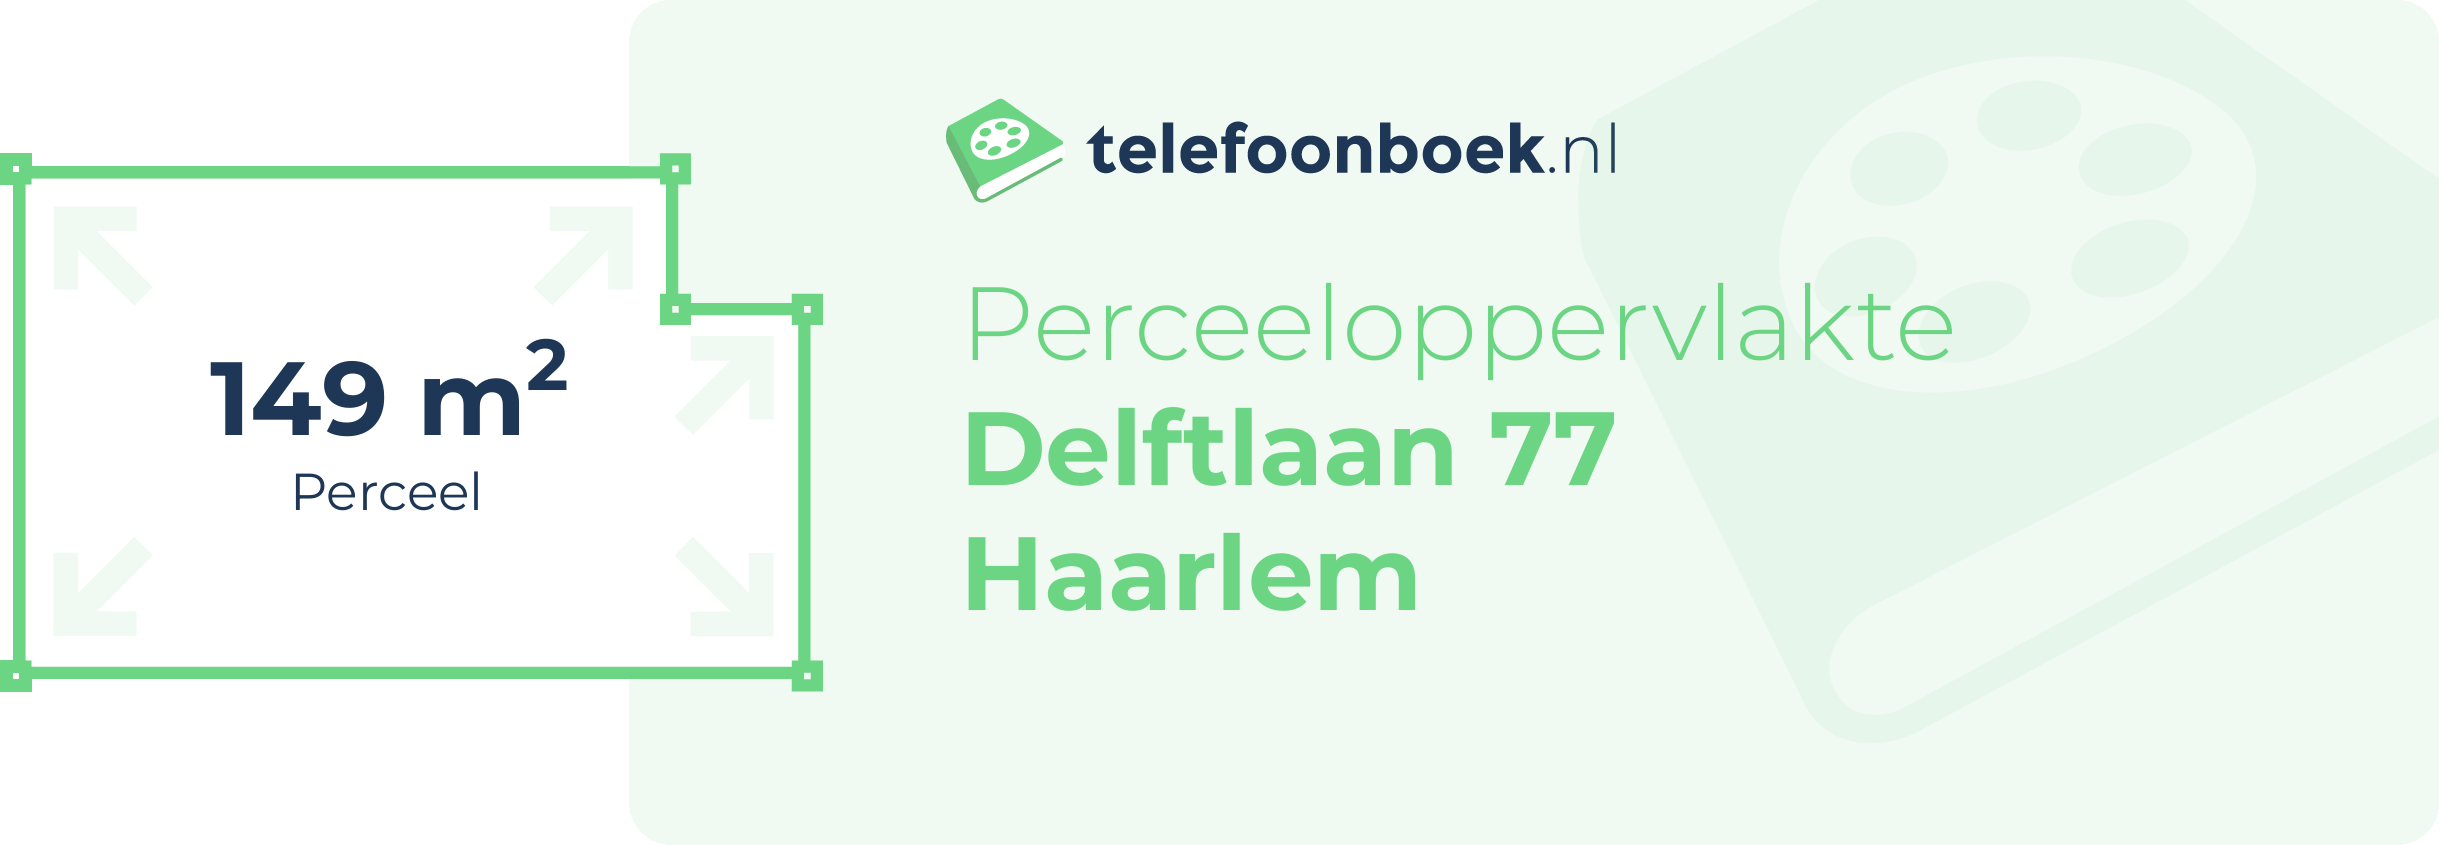 Perceeloppervlakte Delftlaan 77 Haarlem